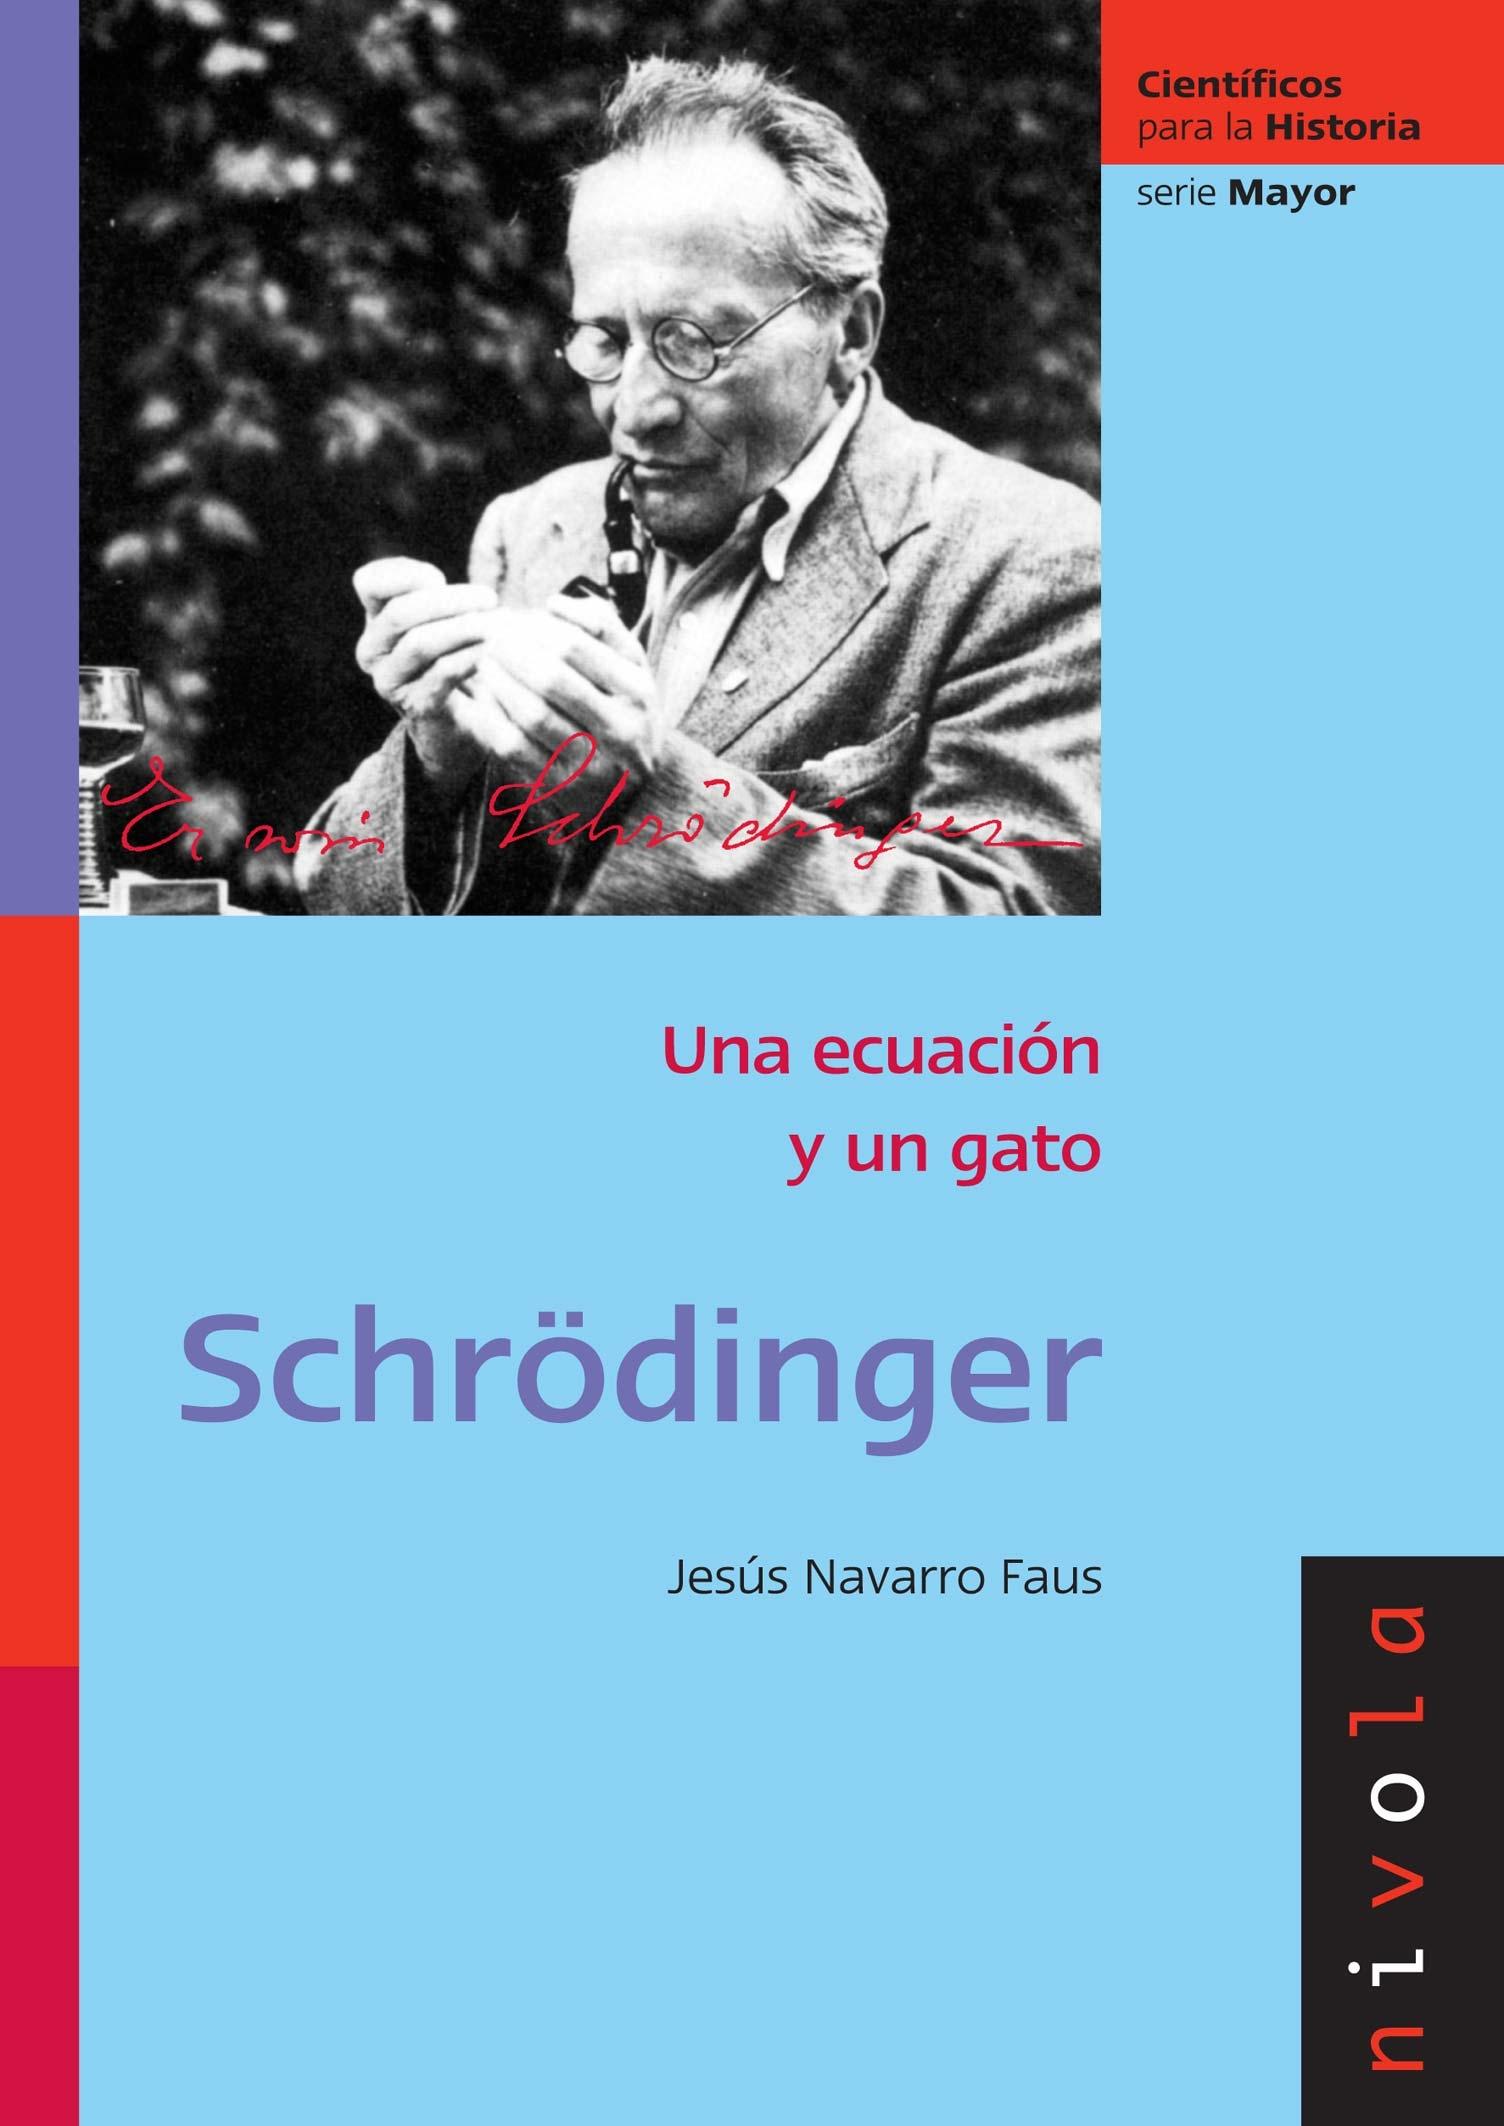 Schrödinger "Una ecuación y un gato". 